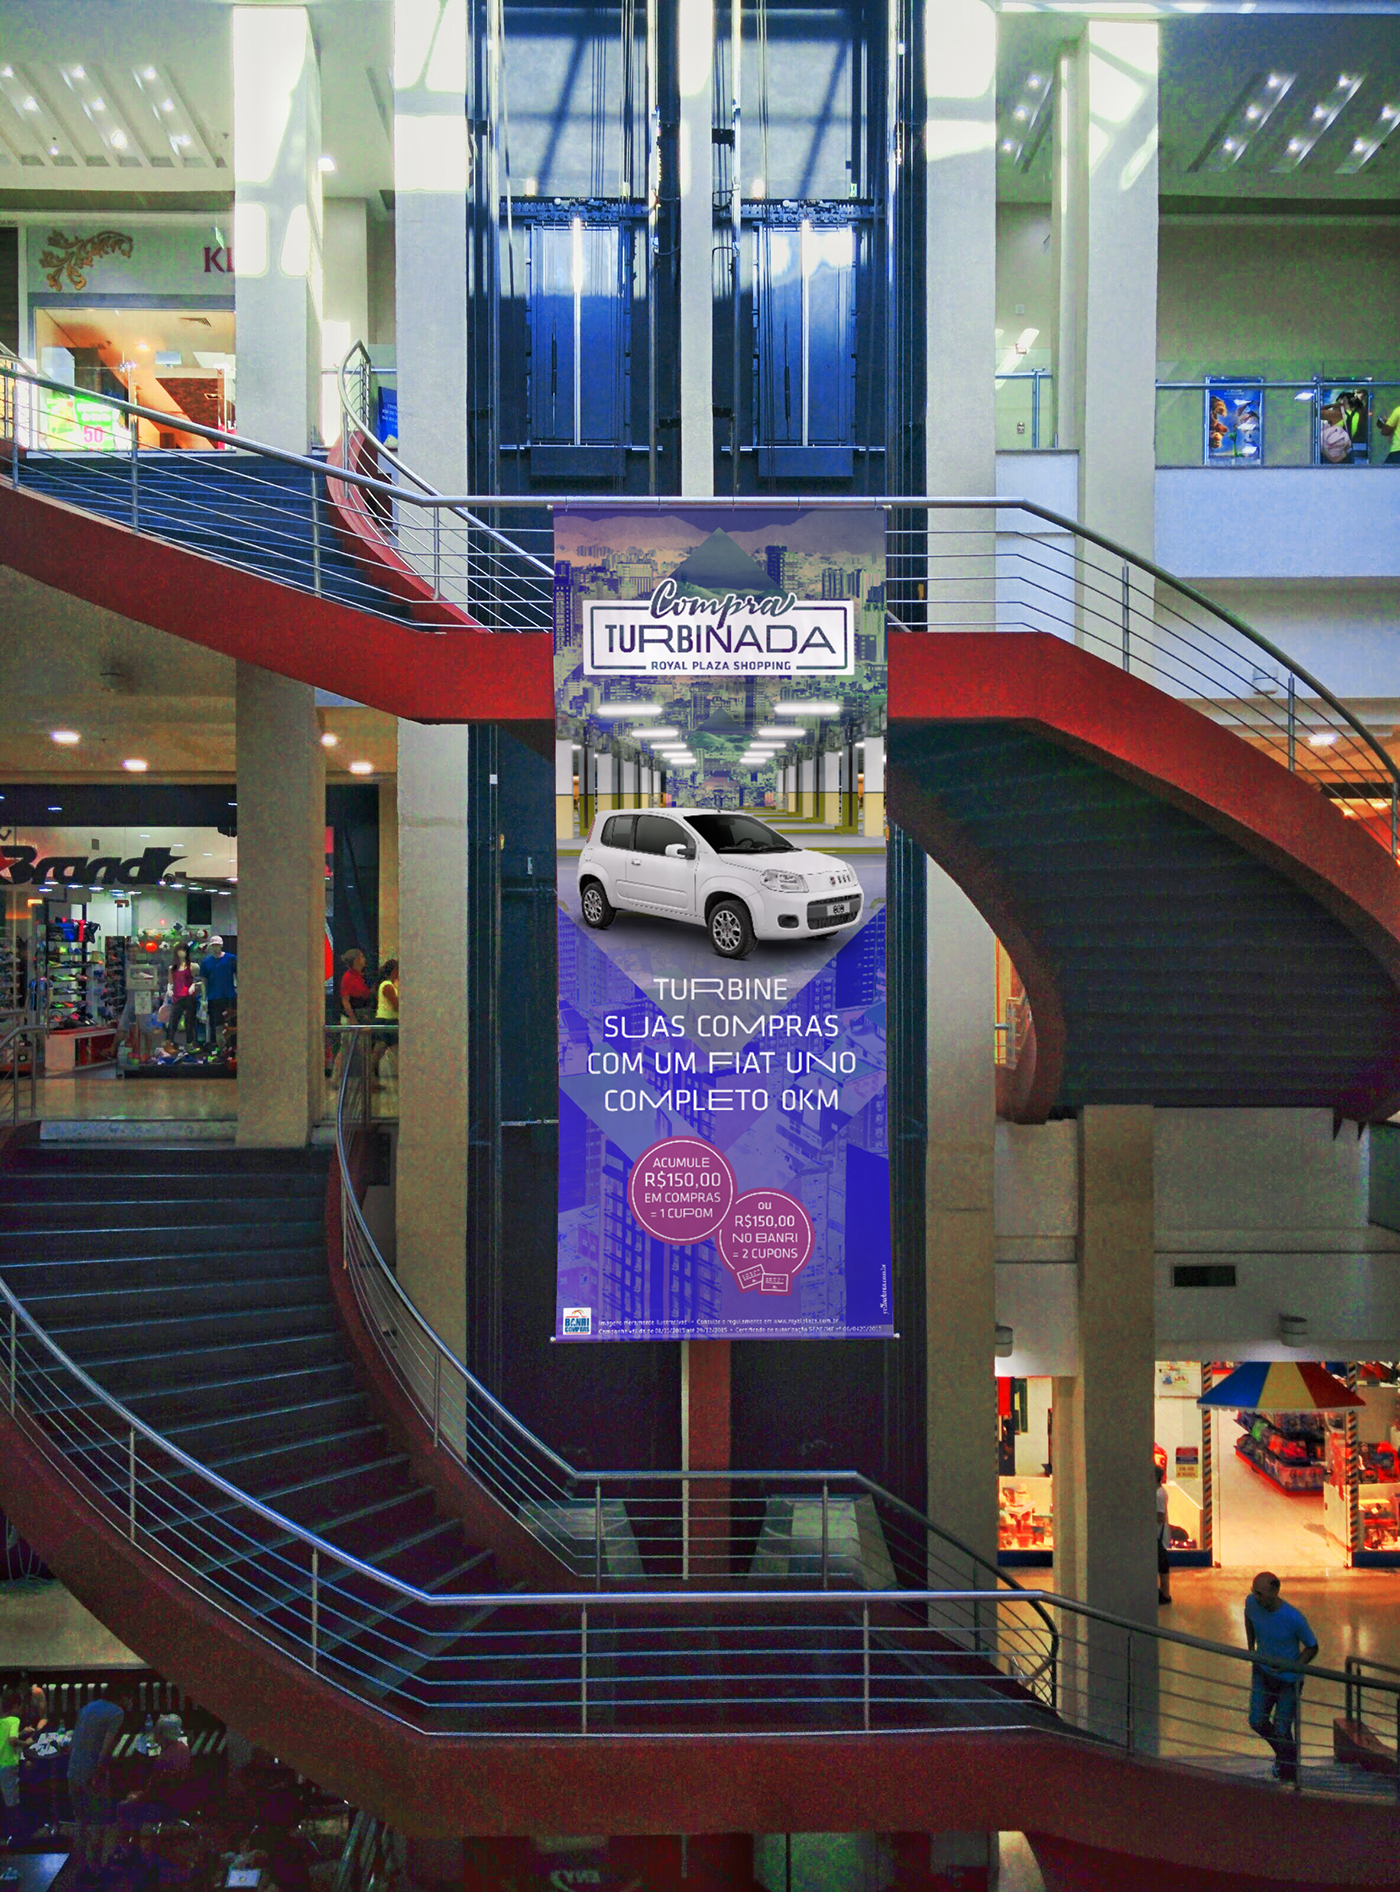 campanha vendas carro Promoção Shopping ads Advertising  colorful vibrante Psicodélico